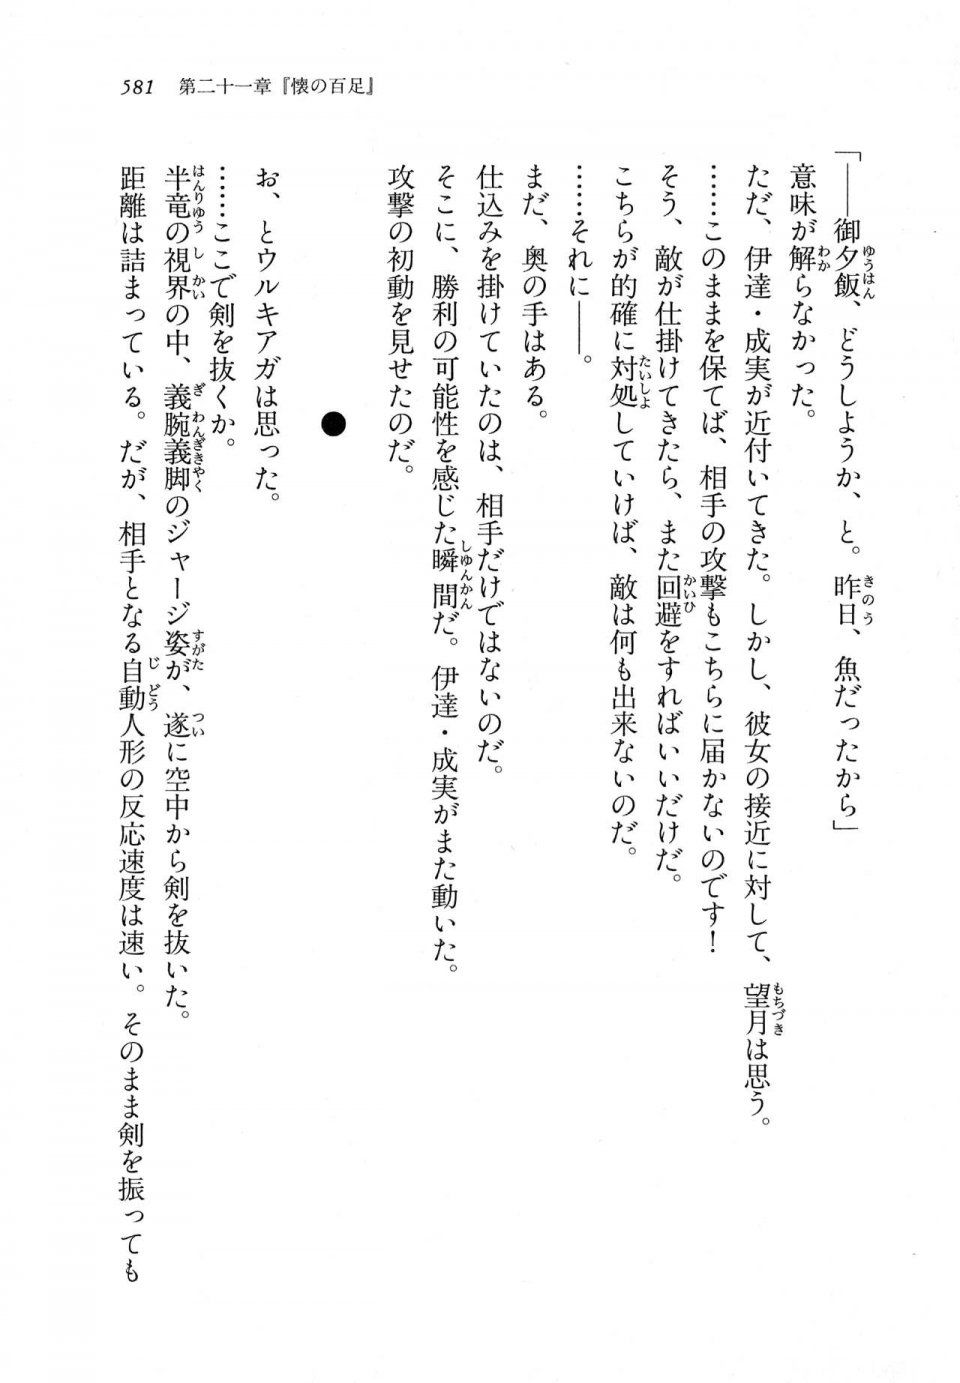 Kyoukai Senjou no Horizon LN Vol 11(5A) - Photo #581